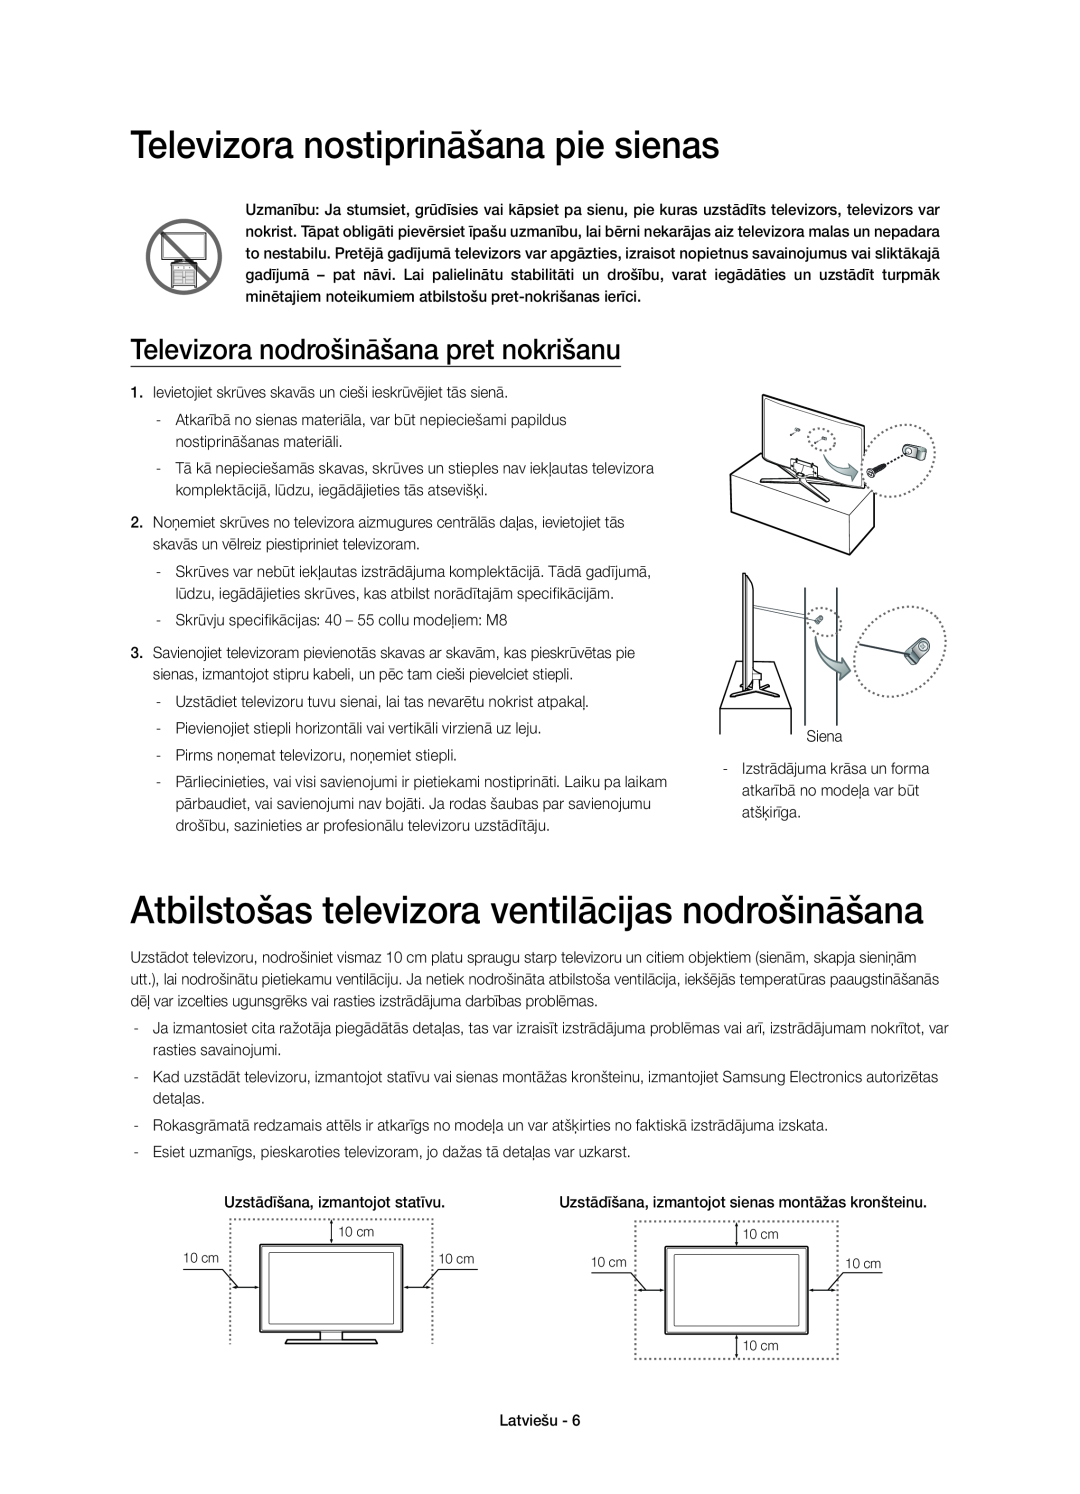 Samsung UE55H6640SLXXC manual Televizora nostiprināšana pie sienas, Atbilstošas televizora ventilācijas nodrošināšana 